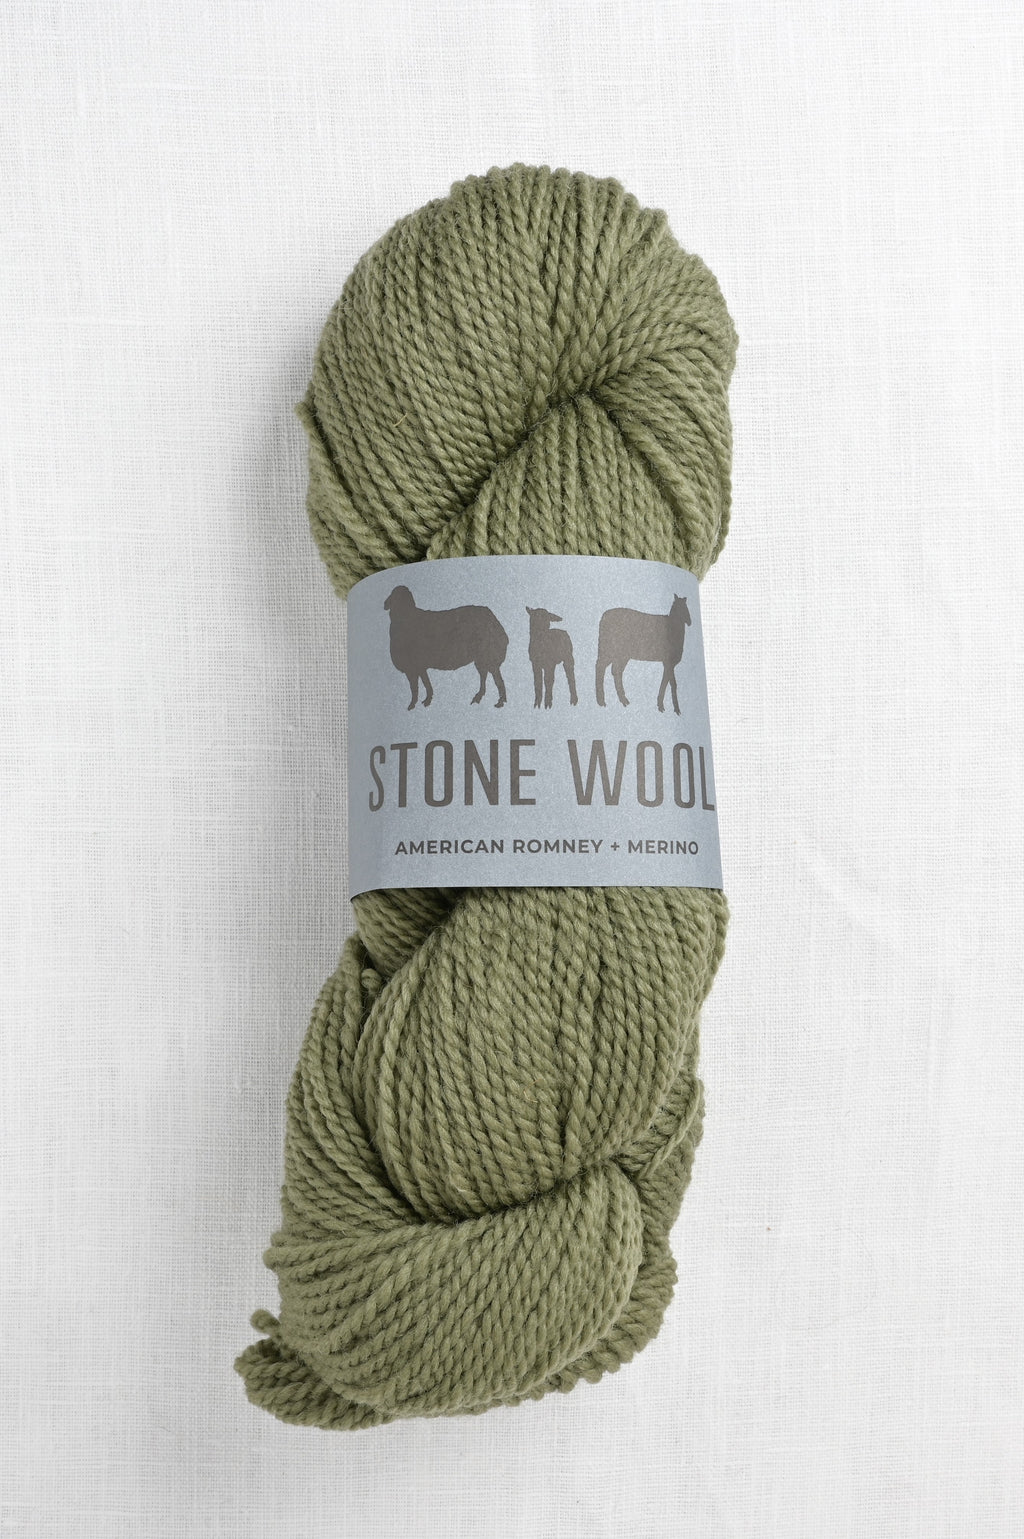 stone wool romney + merino caldera